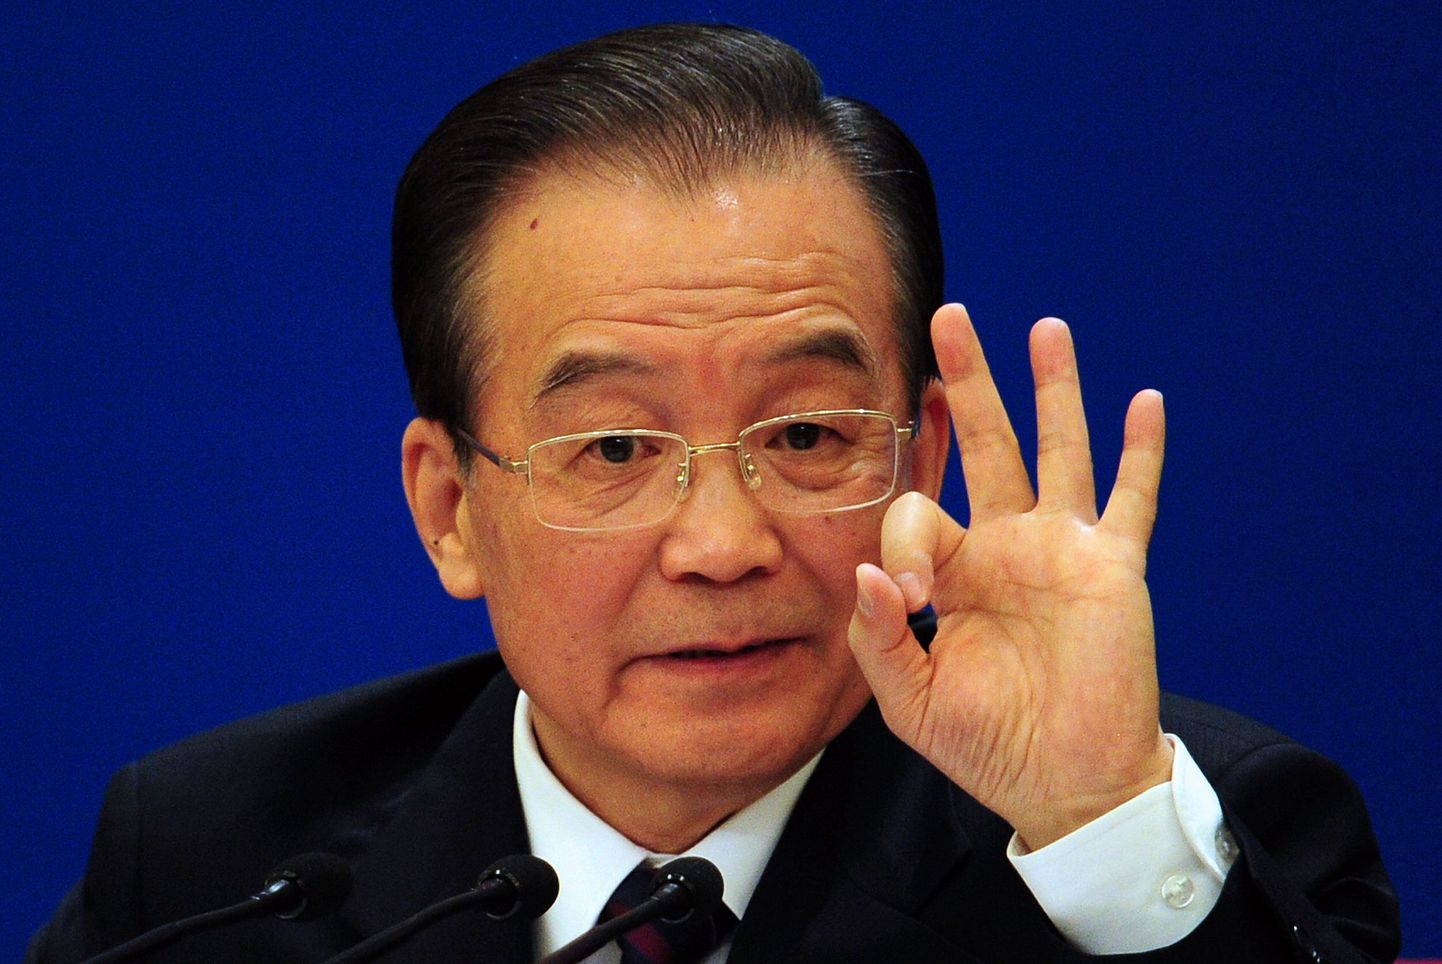 Hiina peaminister Wen Jiabao ütles tänasel pressikonverentsil, et riik peab asuma poliitilise reformi teele, kuid ühtegi uut ettepanekut ei avaldanud.